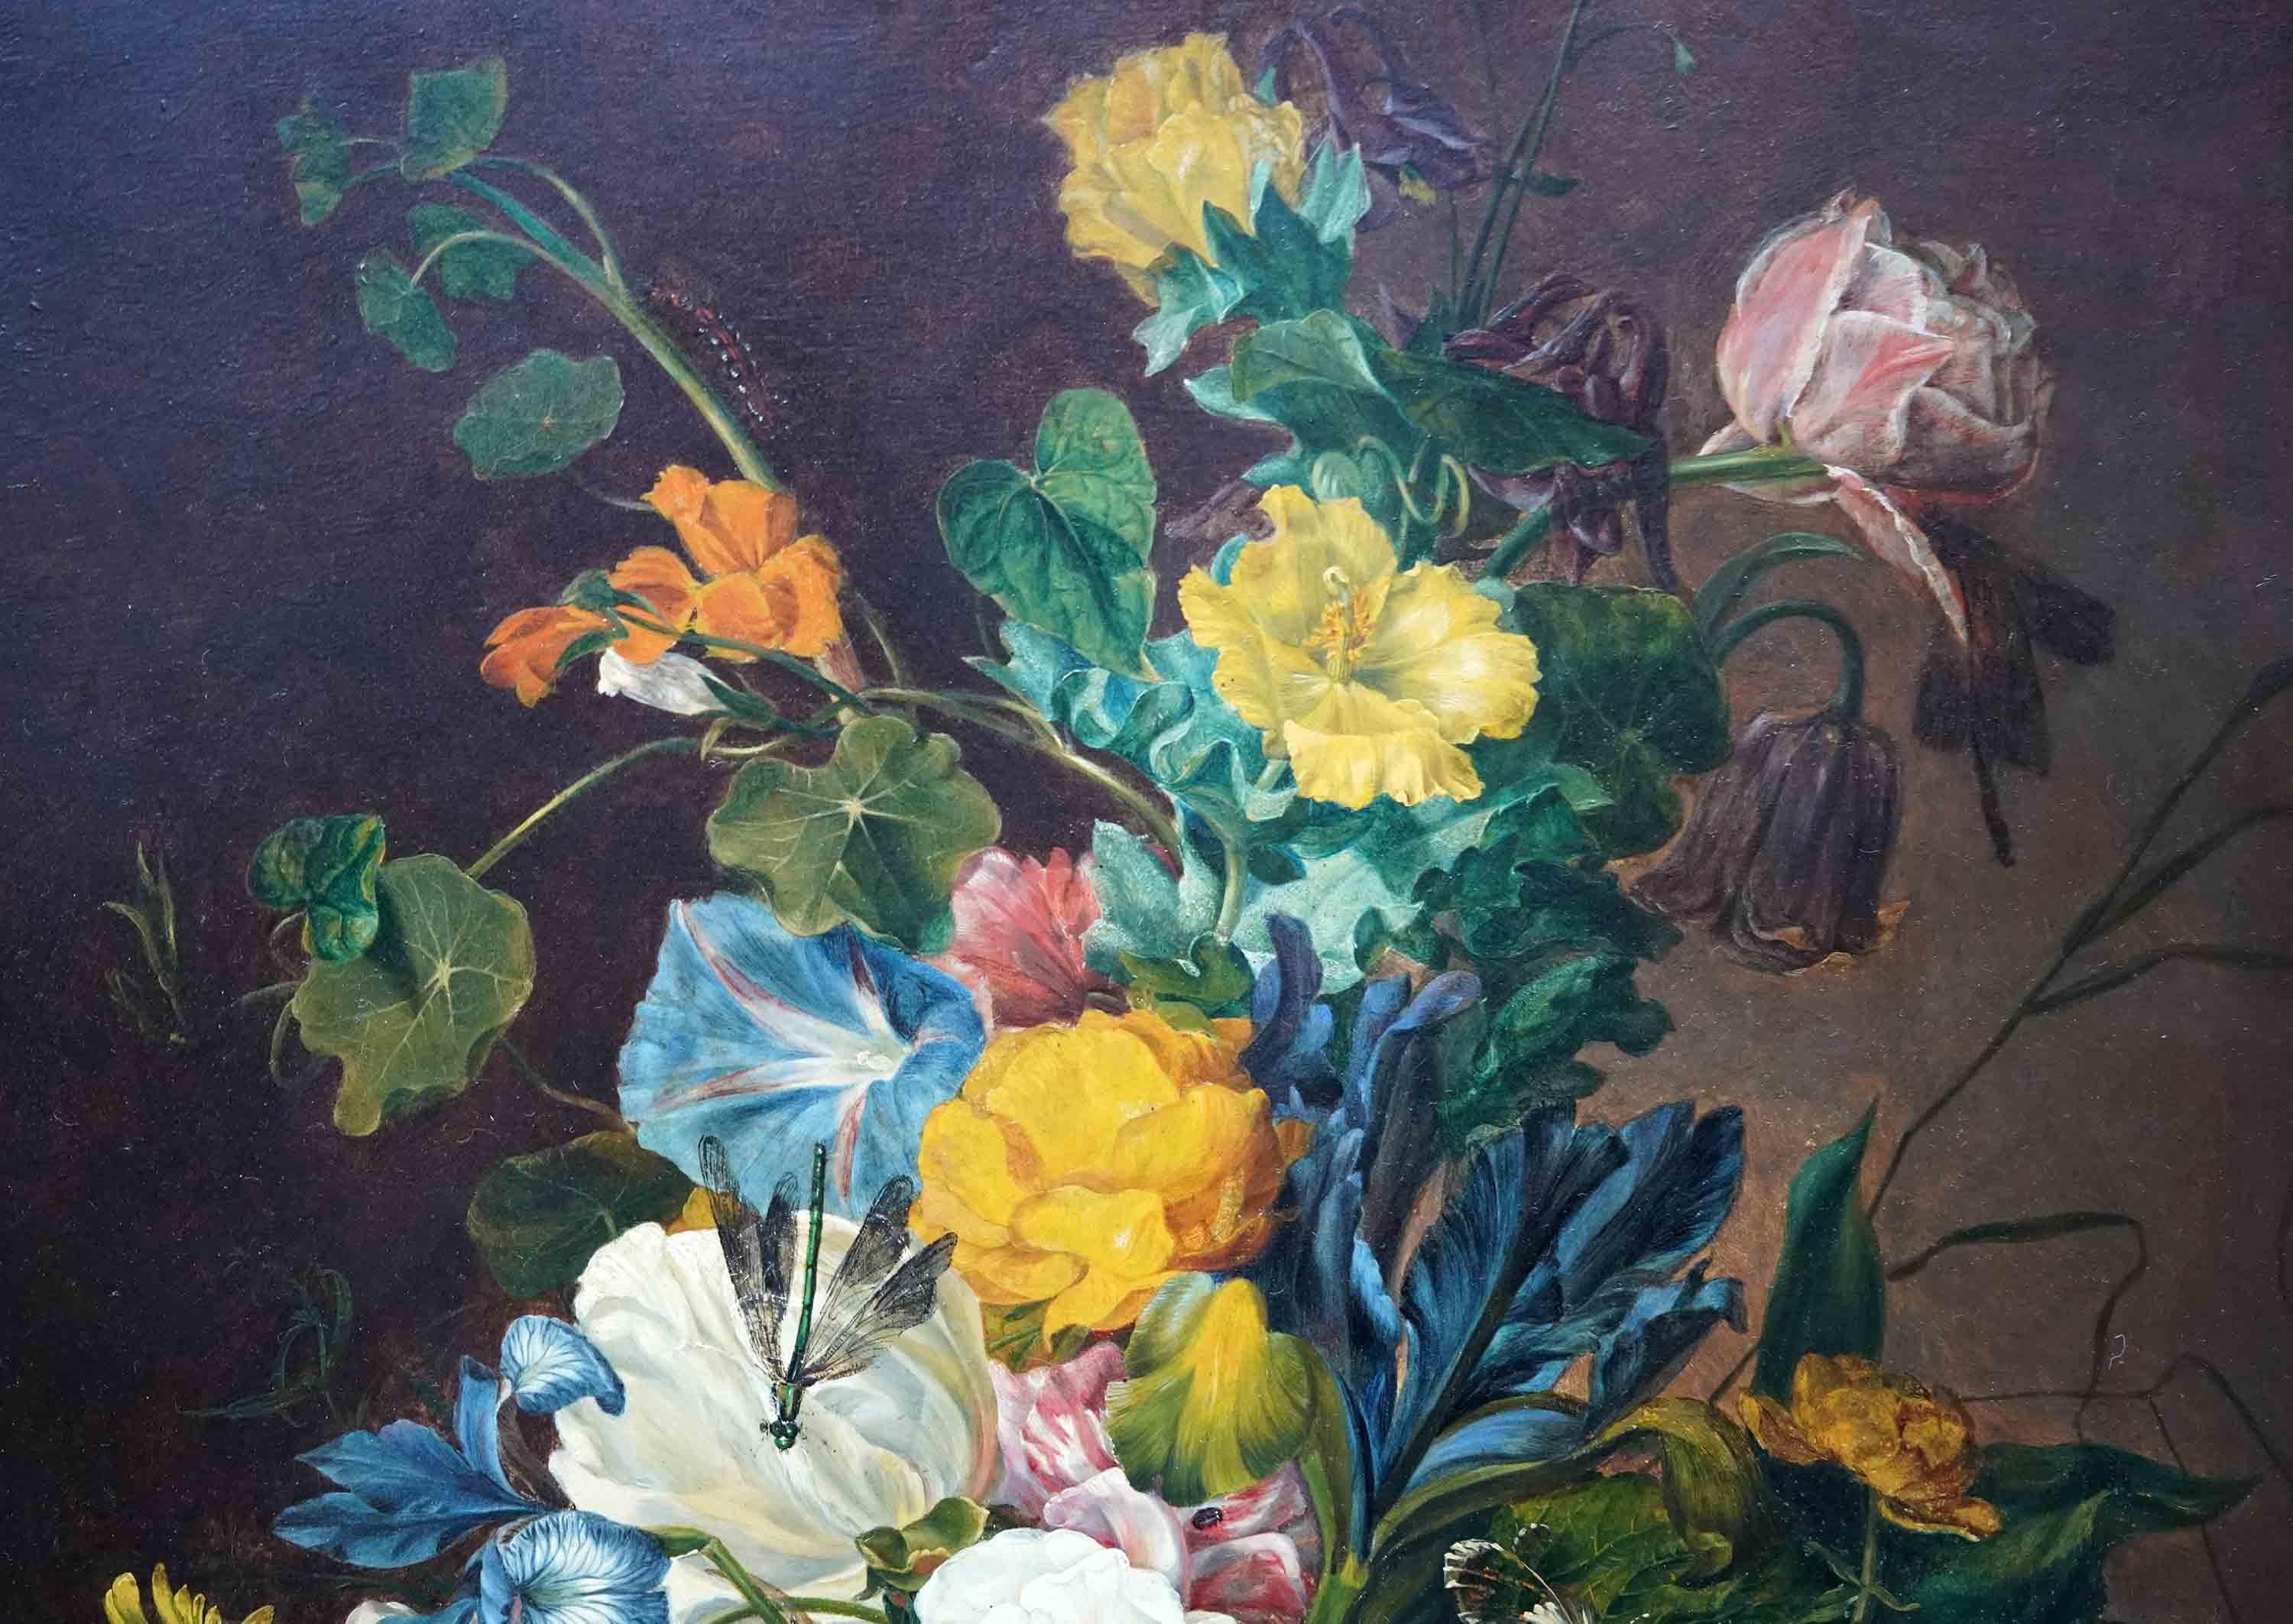 Diese atemberaubende 19. Jahrhundert Stillleben floral Öl auf Tafel Gemälde ist von renommierten weiblichen Norwich School Künstler Emily Stannard Stillleben. Emily Stannard und ihre Nichte Eloise Harriet Stannard gelten heute als die bedeutendsten